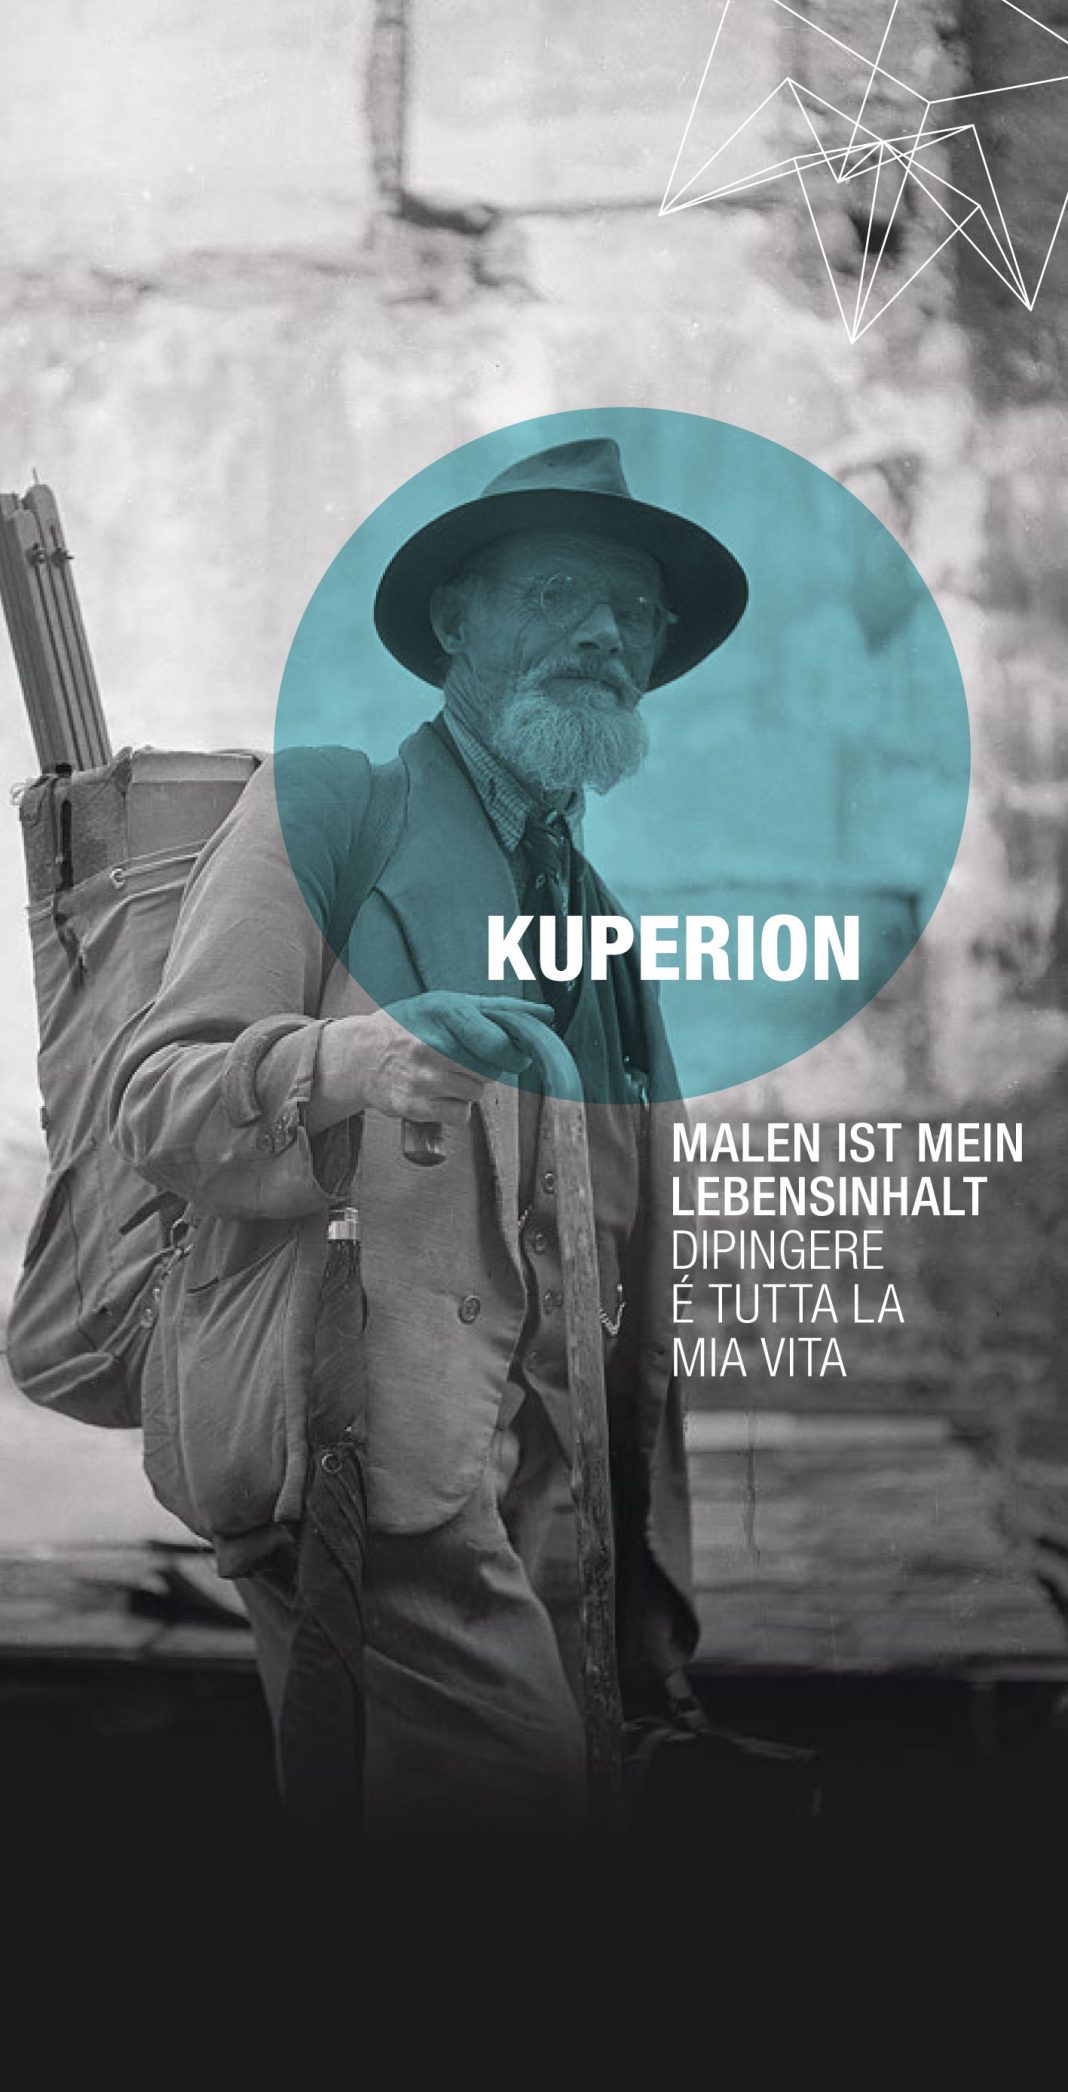 Alois Kuperion – Dipingere è tutta la mia vitahttps://www.exibart.com/repository/media/eventi/2015/09/alois-kuperion-8211-dipingere-è-tutta-la-mia-vita-2-1068x2092.jpg